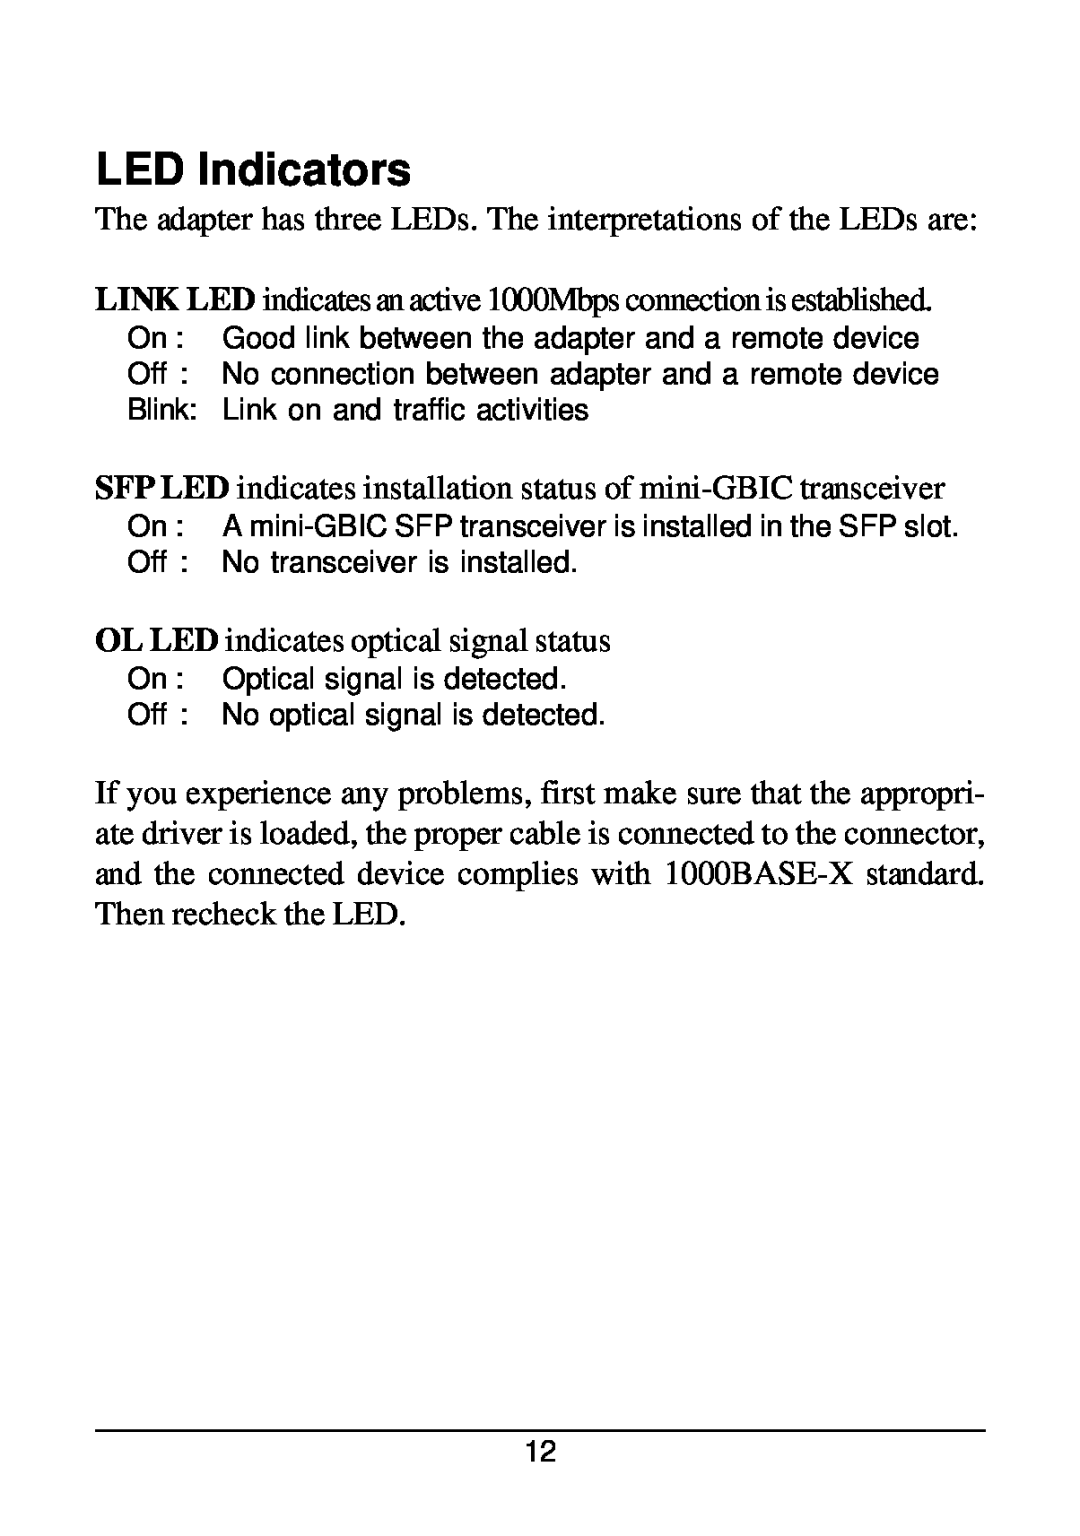 KTI Networks KG-500F manual LED Indicators 